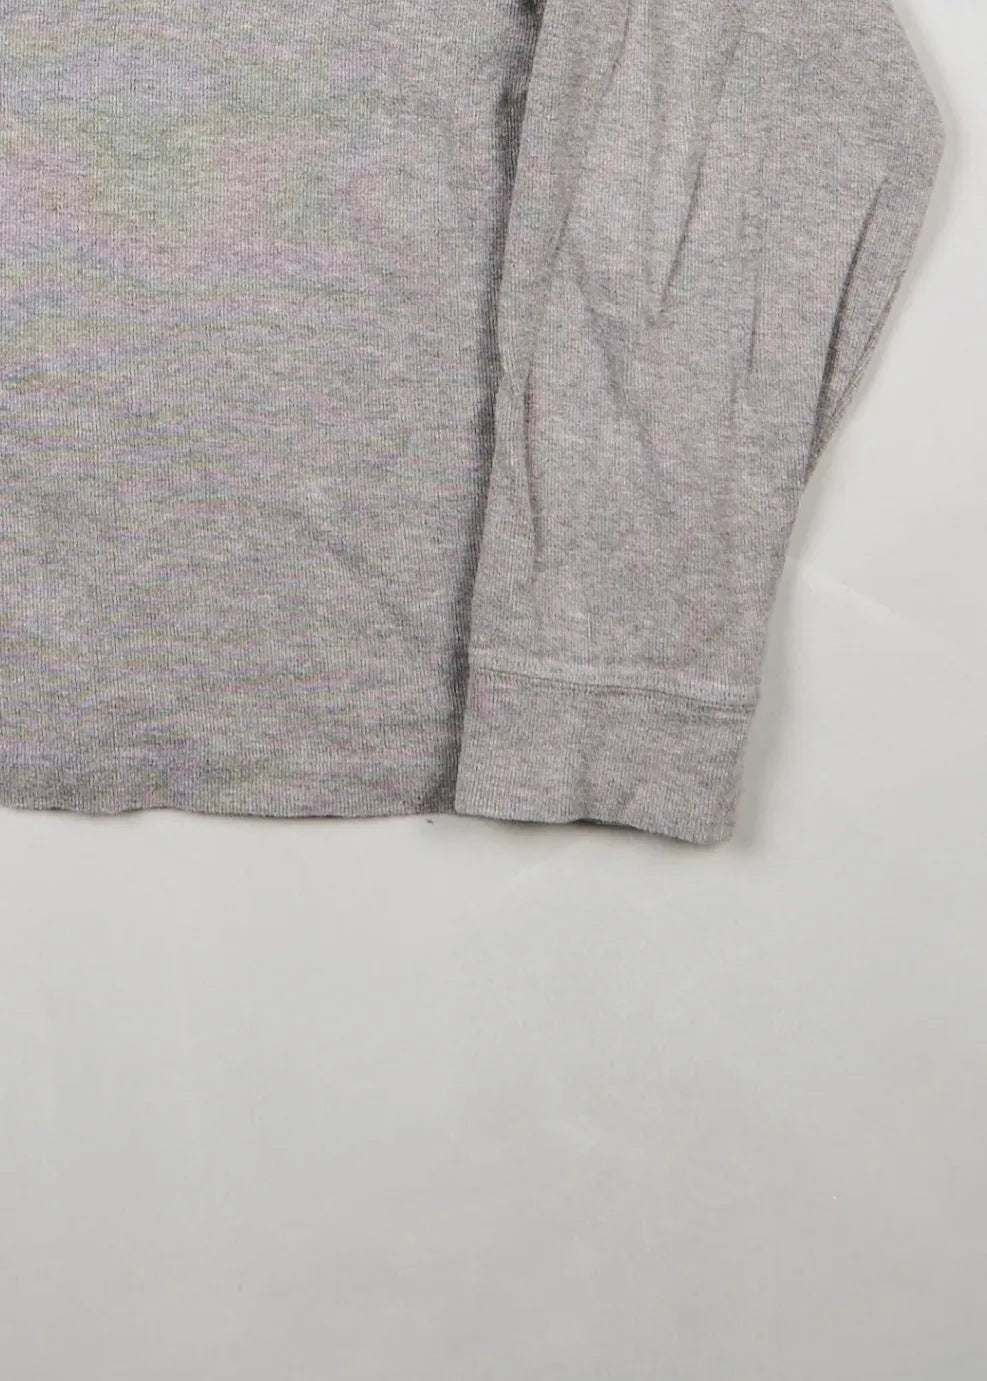 Ralph Lauren - Sweatshirt (S) Bottom Right